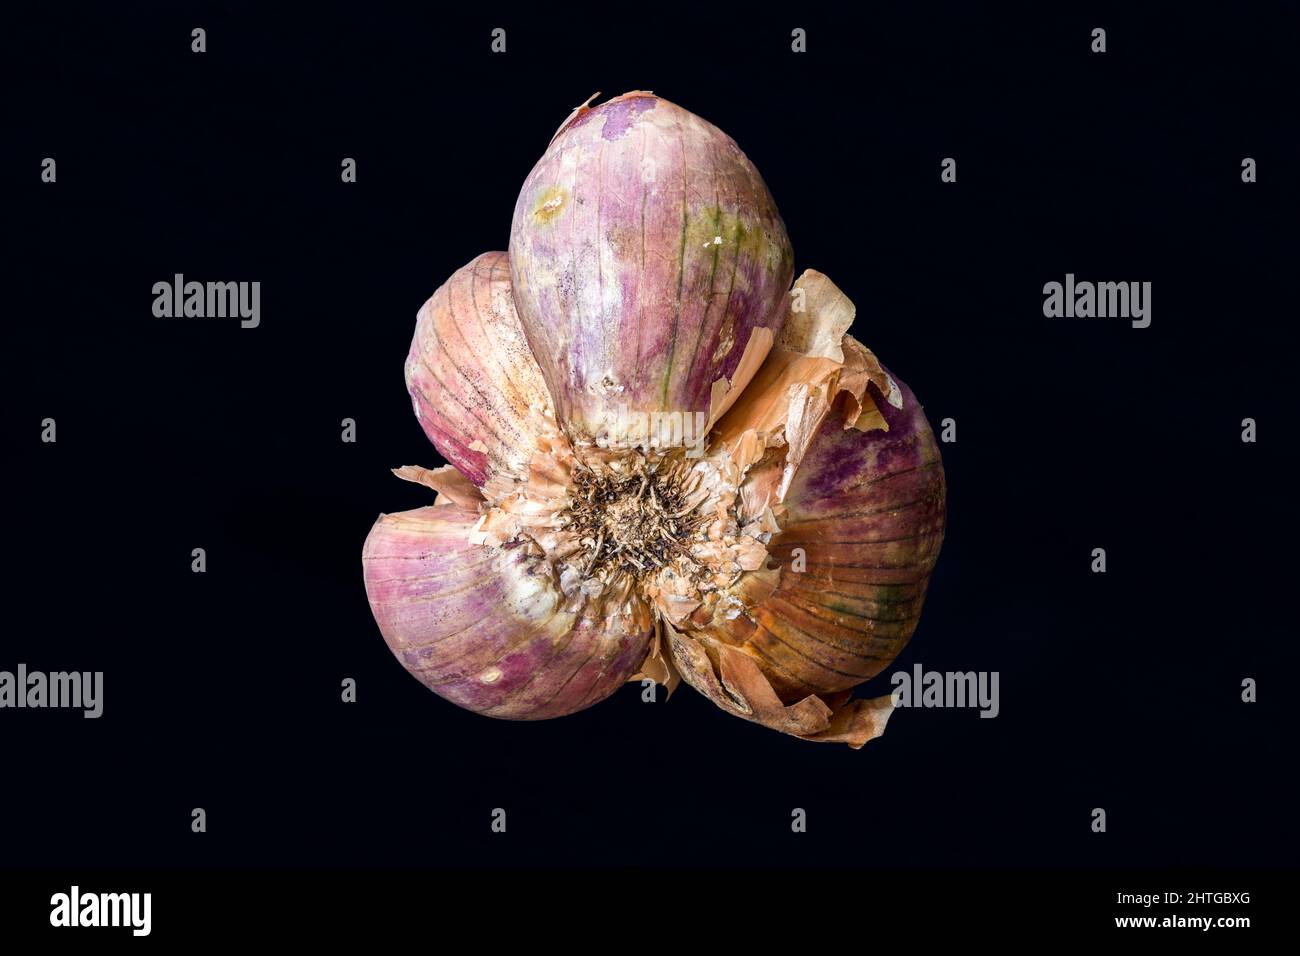 Braune und violette Schalotte, Allium Cepa Zwiebel, isoliert auf dunklem Hintergrund Stockfoto